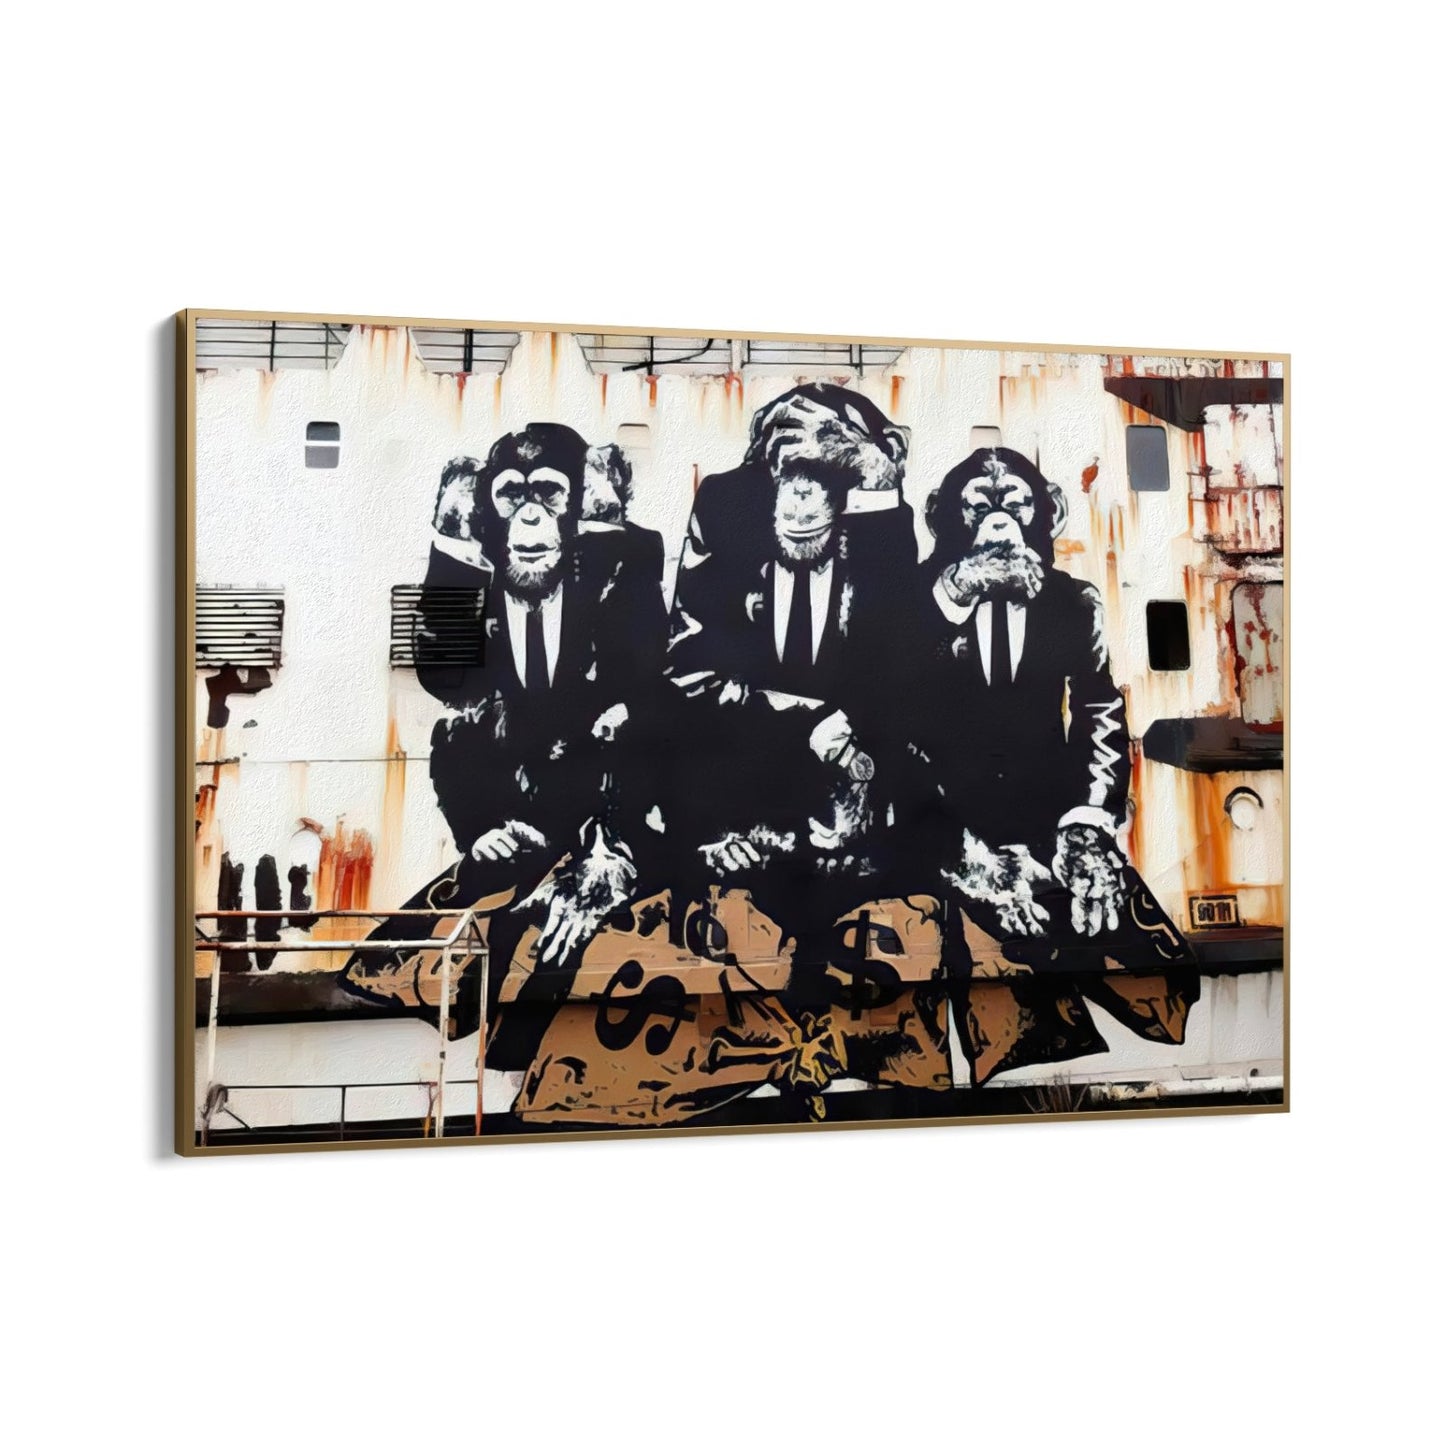 Trzy małpy biznesu, Banksy